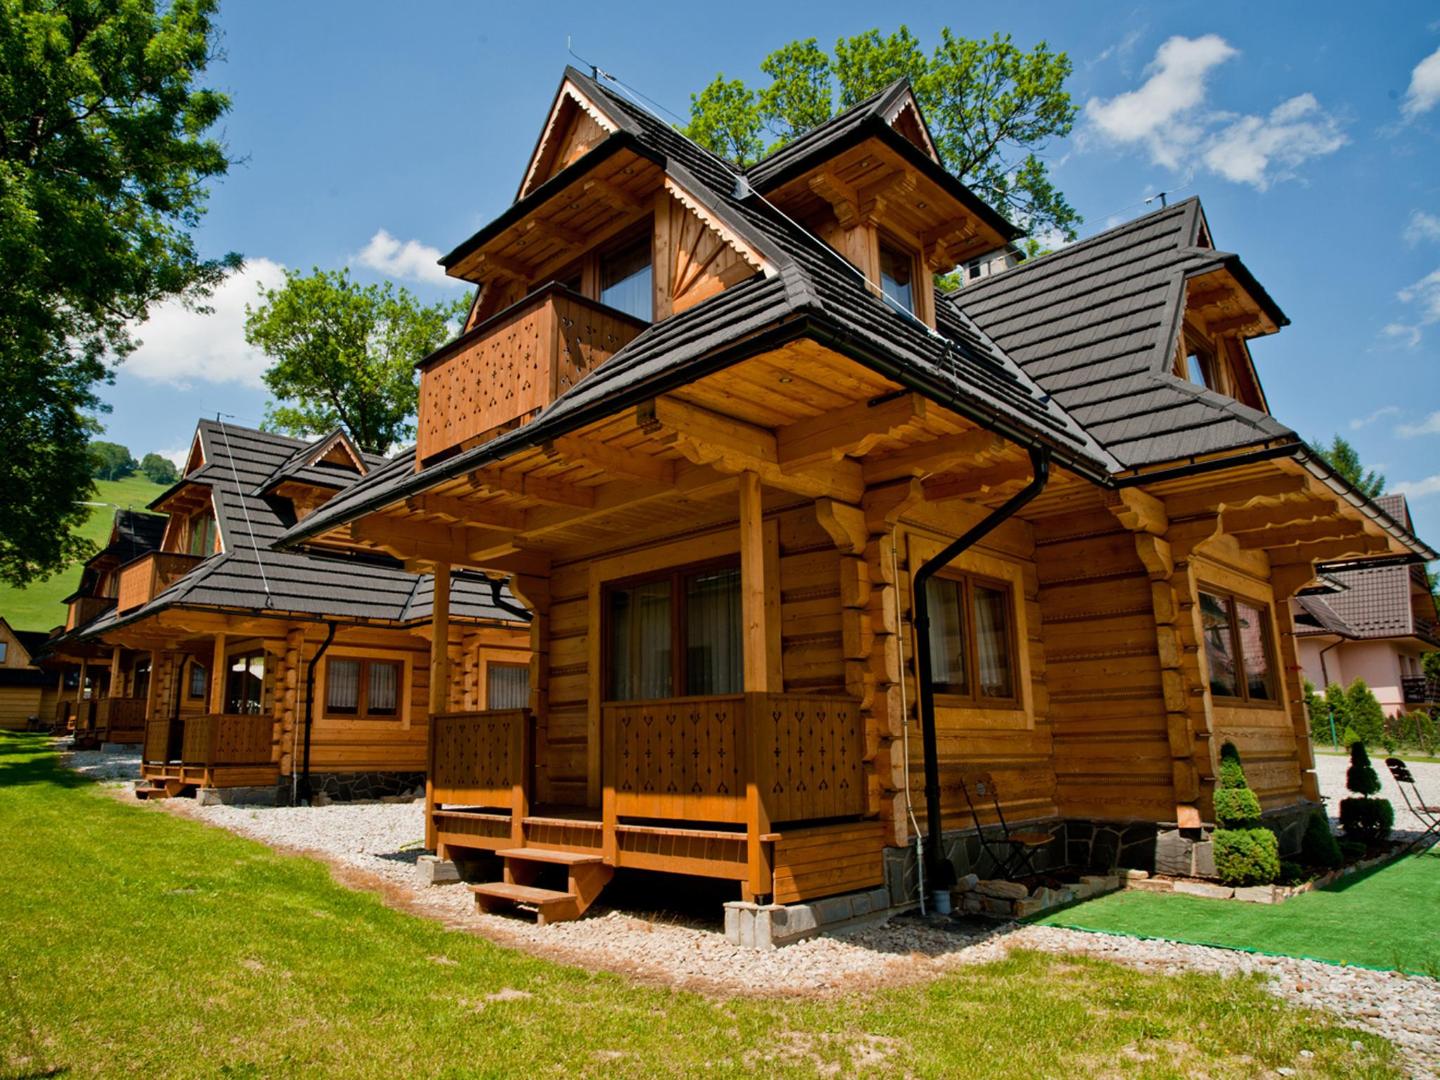 The 10 best cabins in Zakopane, Poland | Booking.com